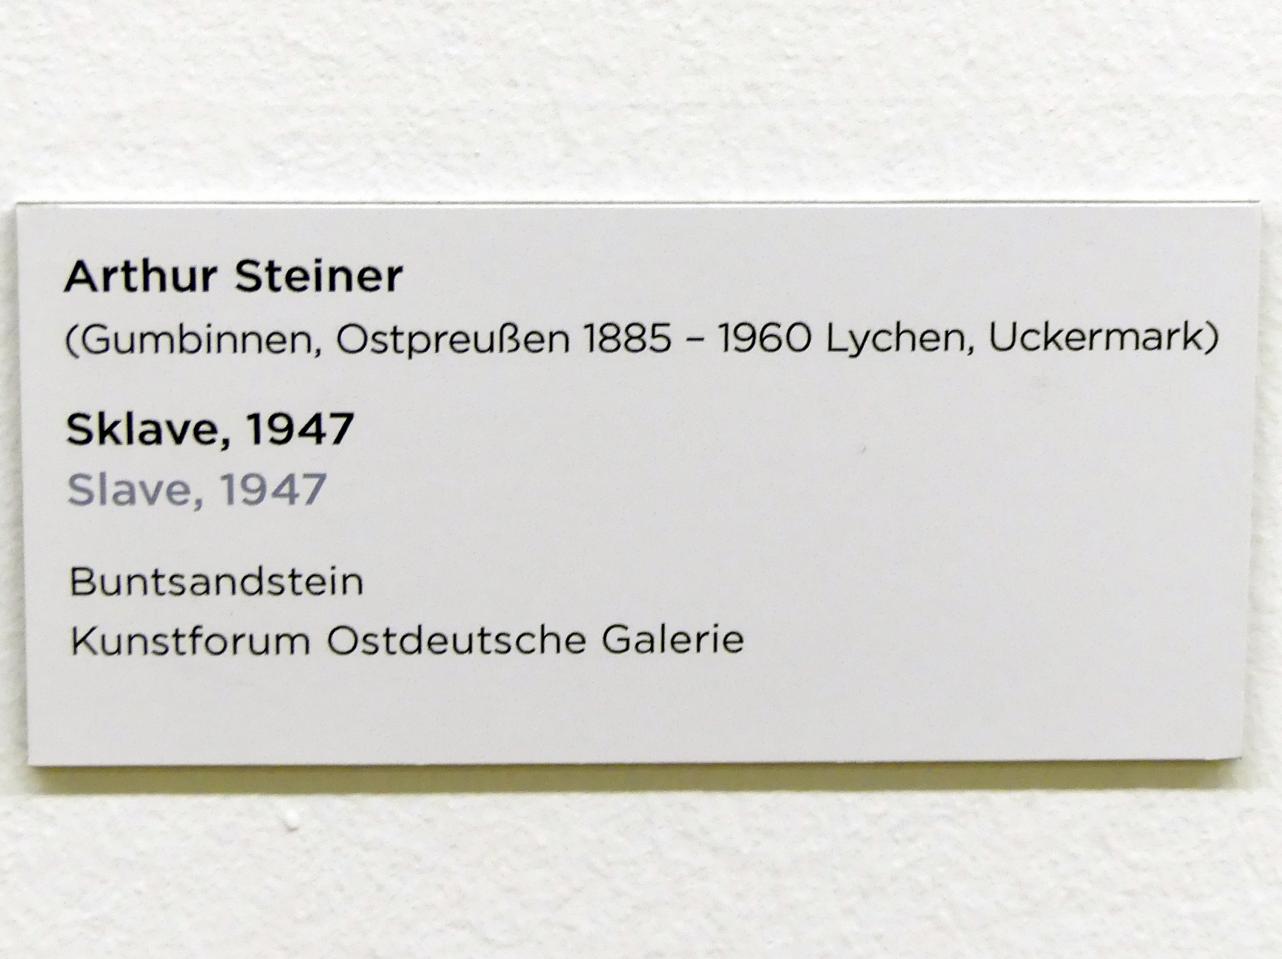 Arthur Steiner (1947), Sklave, Regensburg, Ostdeutsche Galerie, Saal 1, 1947, Bild 3/3